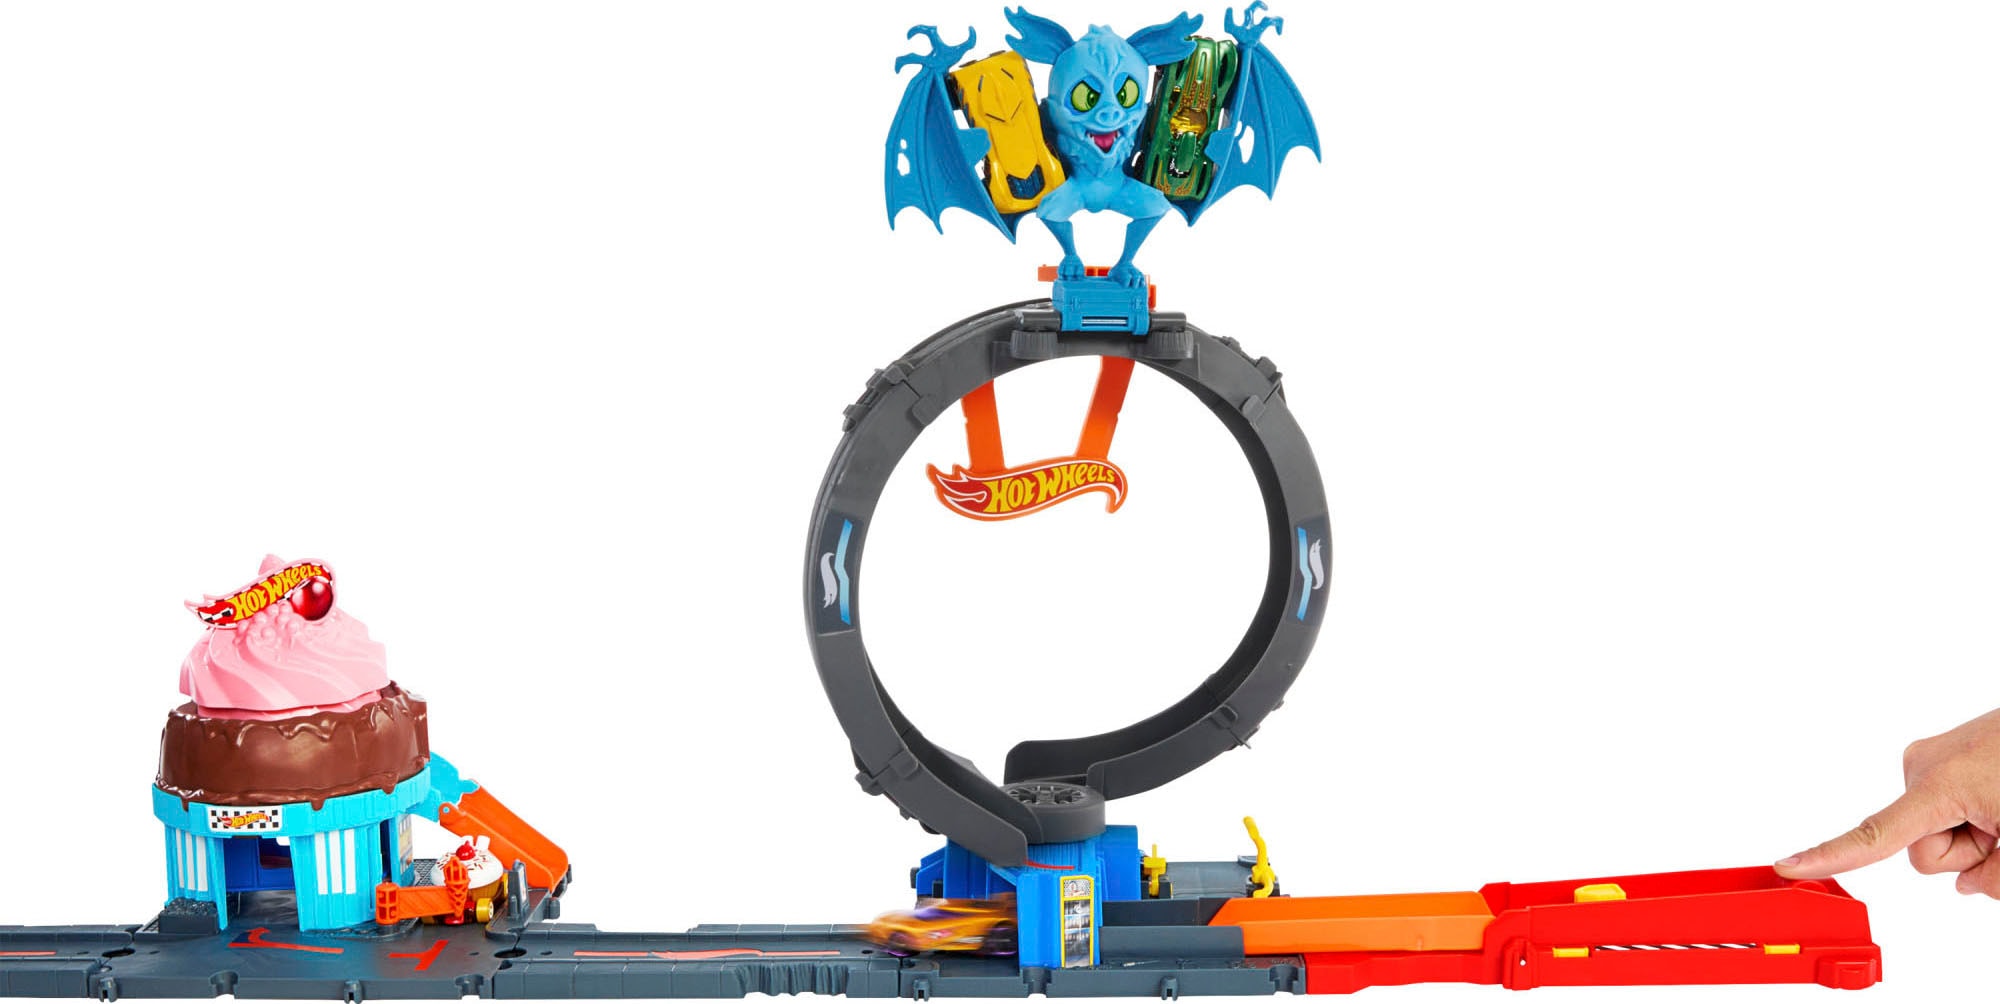 Hot Wheels Autorennbahn »Spielzeugauto Trackset, Angriff der Fledermaus«, mit anpassbarem Looping, inkl. 1 Spielzeugauto